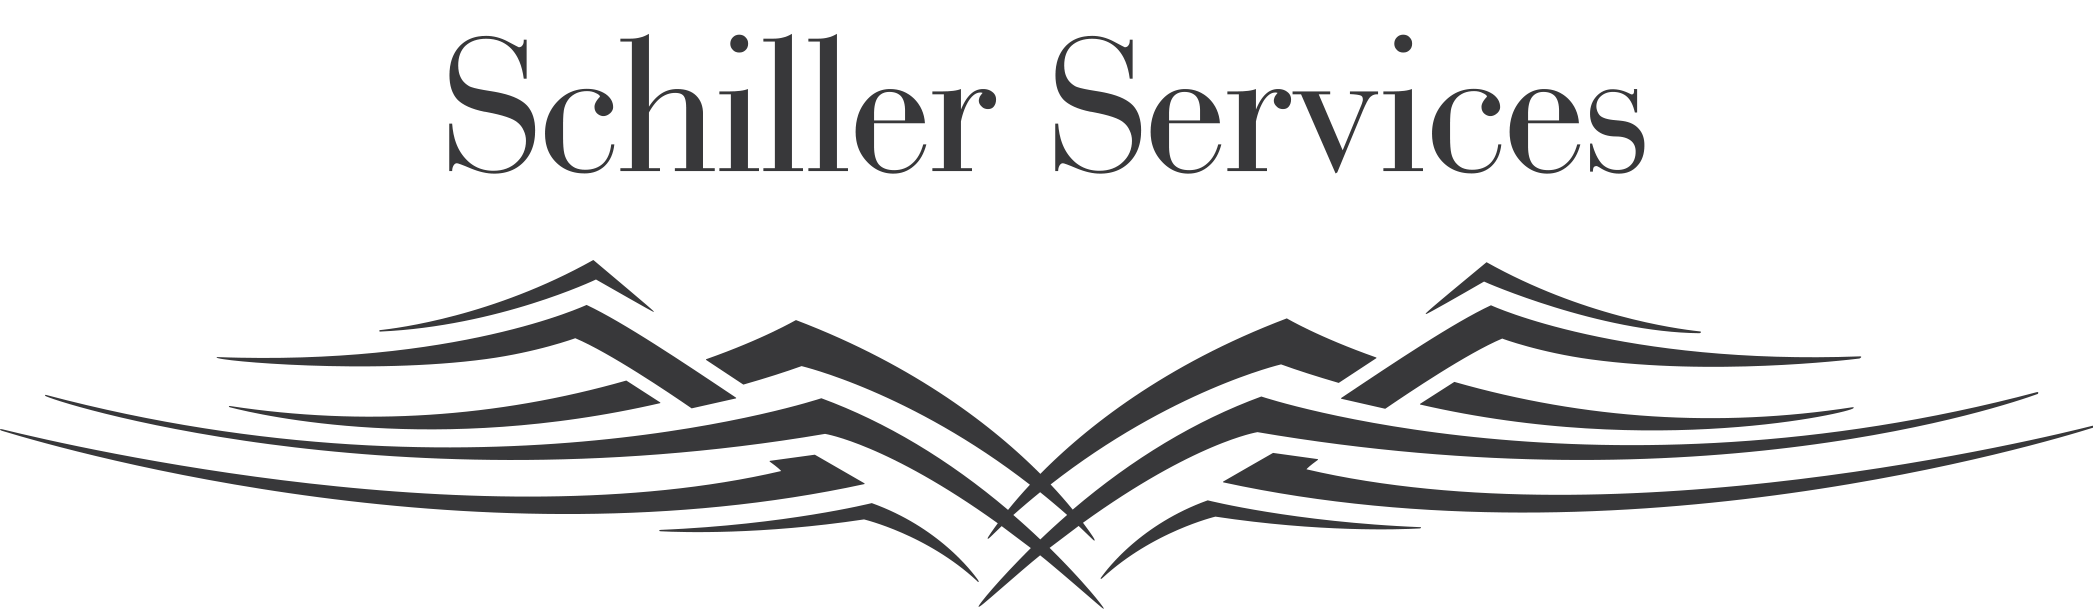 Schiller Services Logo